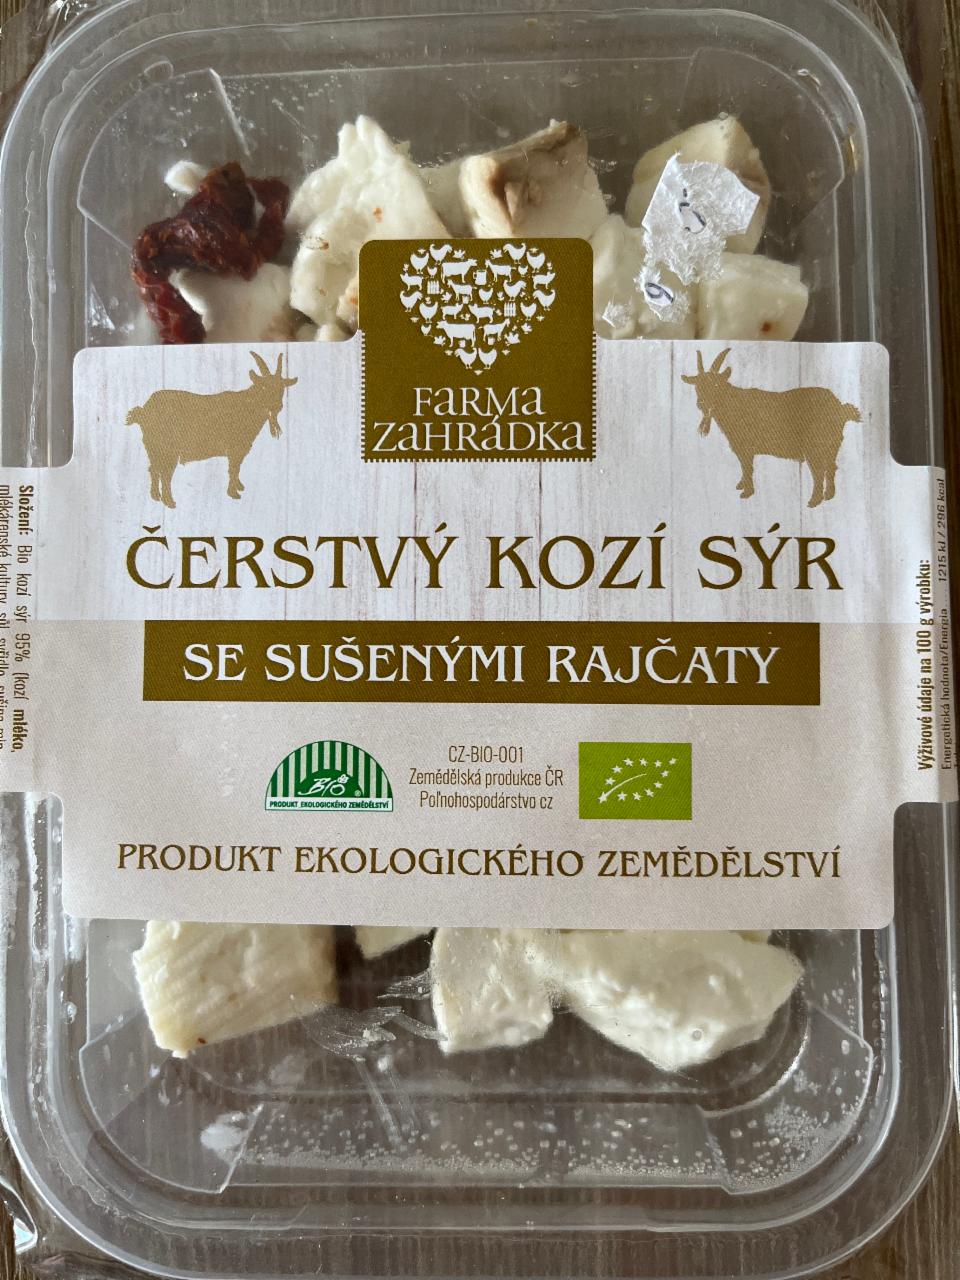 Fotografie - Čerstvý kozí sýr se sušenými rajčaty Farma Zahrádka